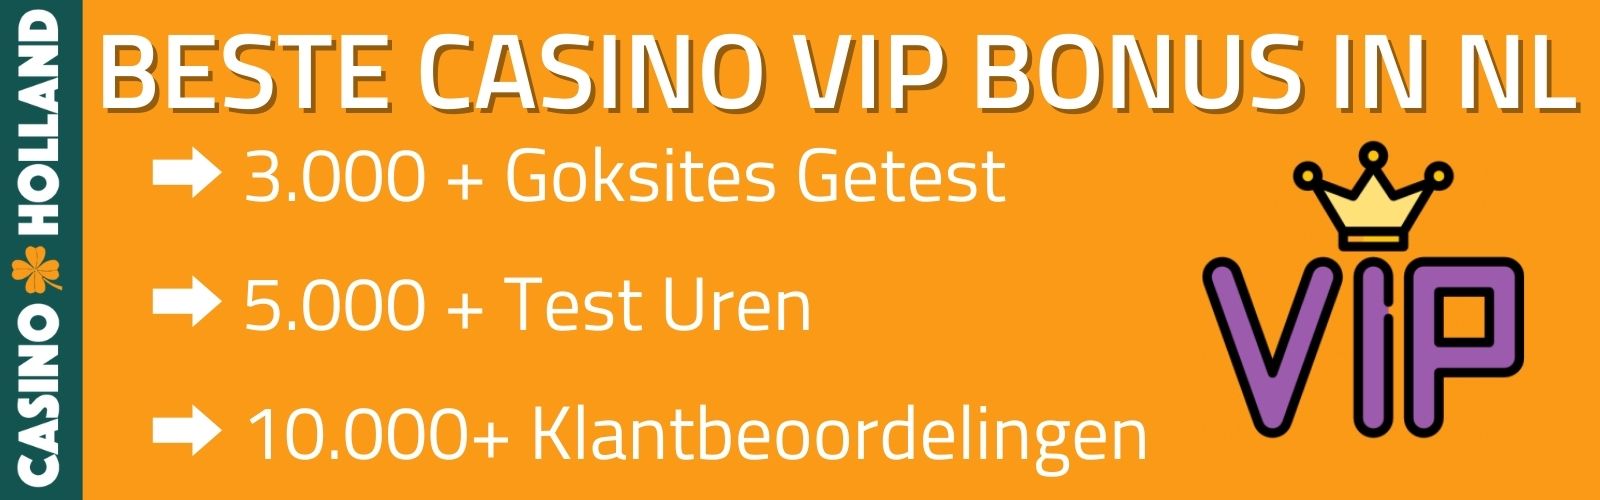 BESTE CASINO VIP BONUS IN NL